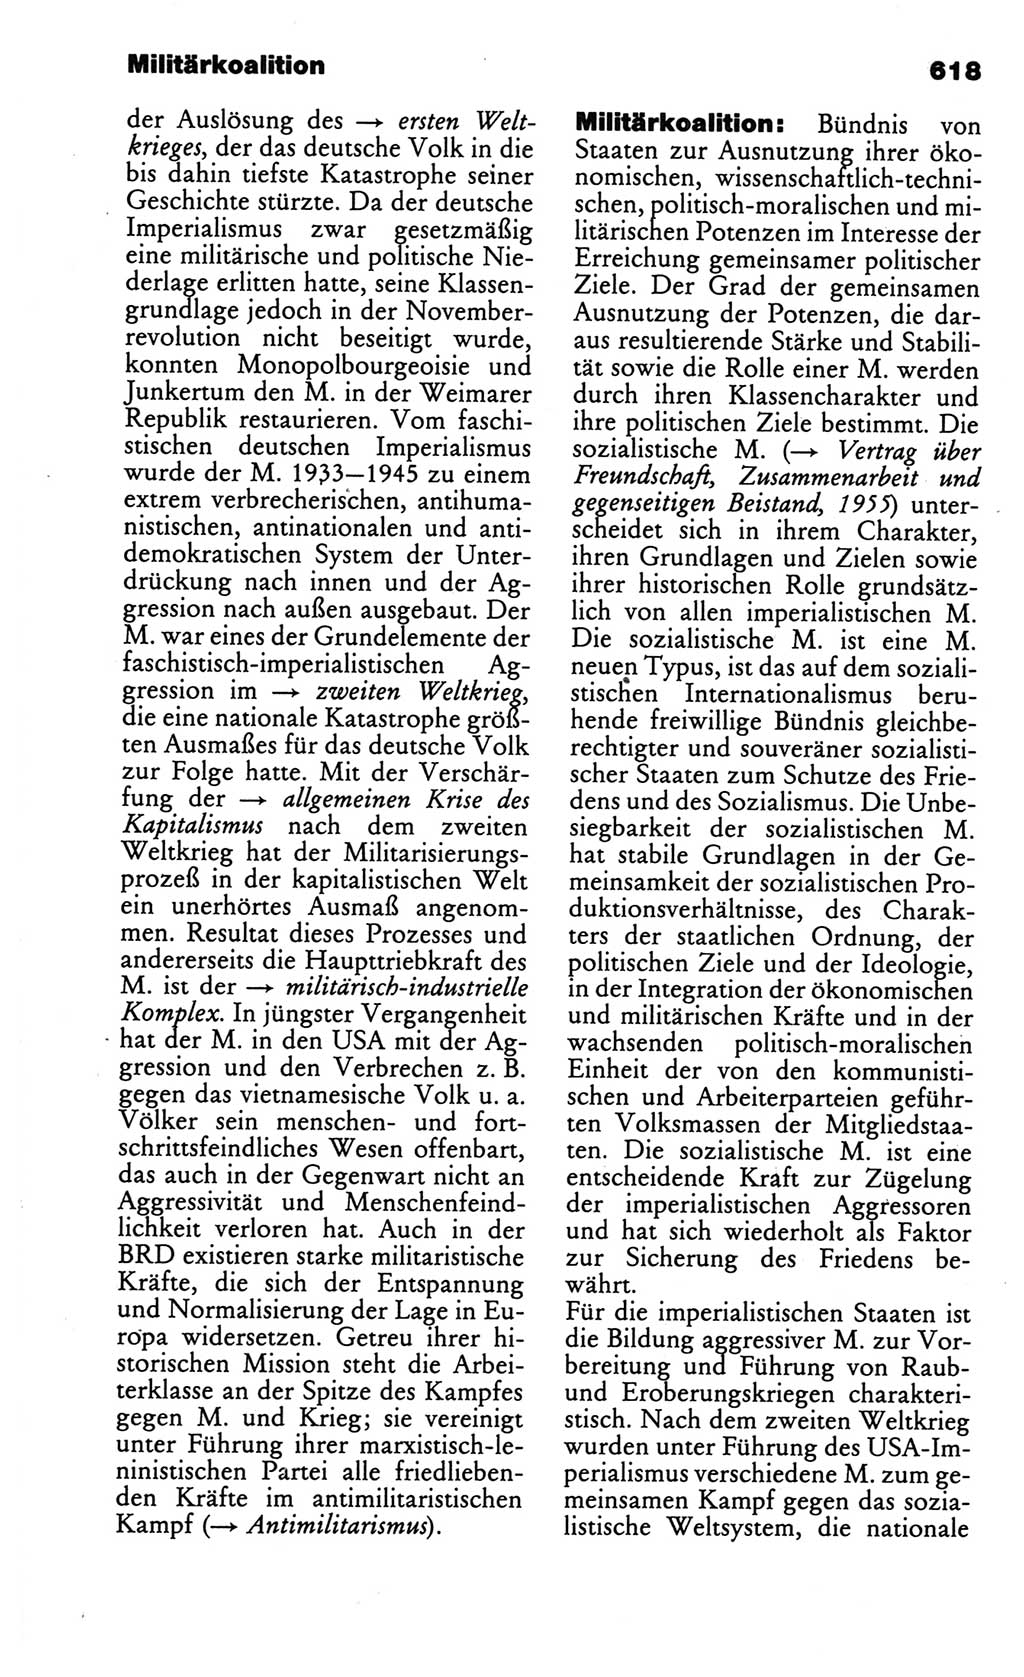 Kleines politisches Wörterbuch [Deutsche Demokratische Republik (DDR)] 1986, Seite 618 (Kl. pol. Wb. DDR 1986, S. 618)